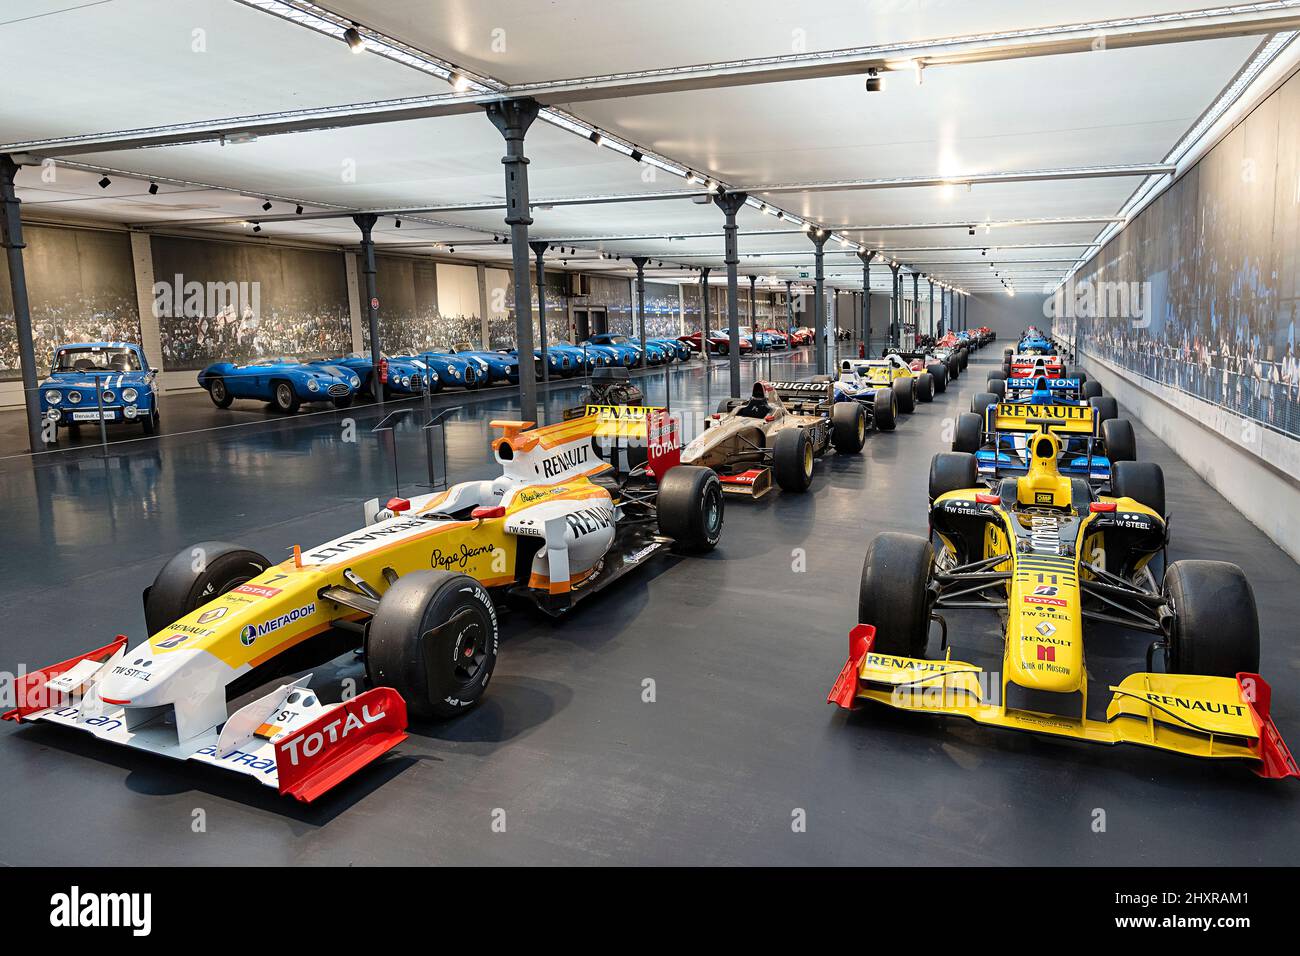 France, Mulhouse, Bas Rhin, la Cité de l'automobile, voitures monoplaces contemporaines de Formule 1. Banque D'Images